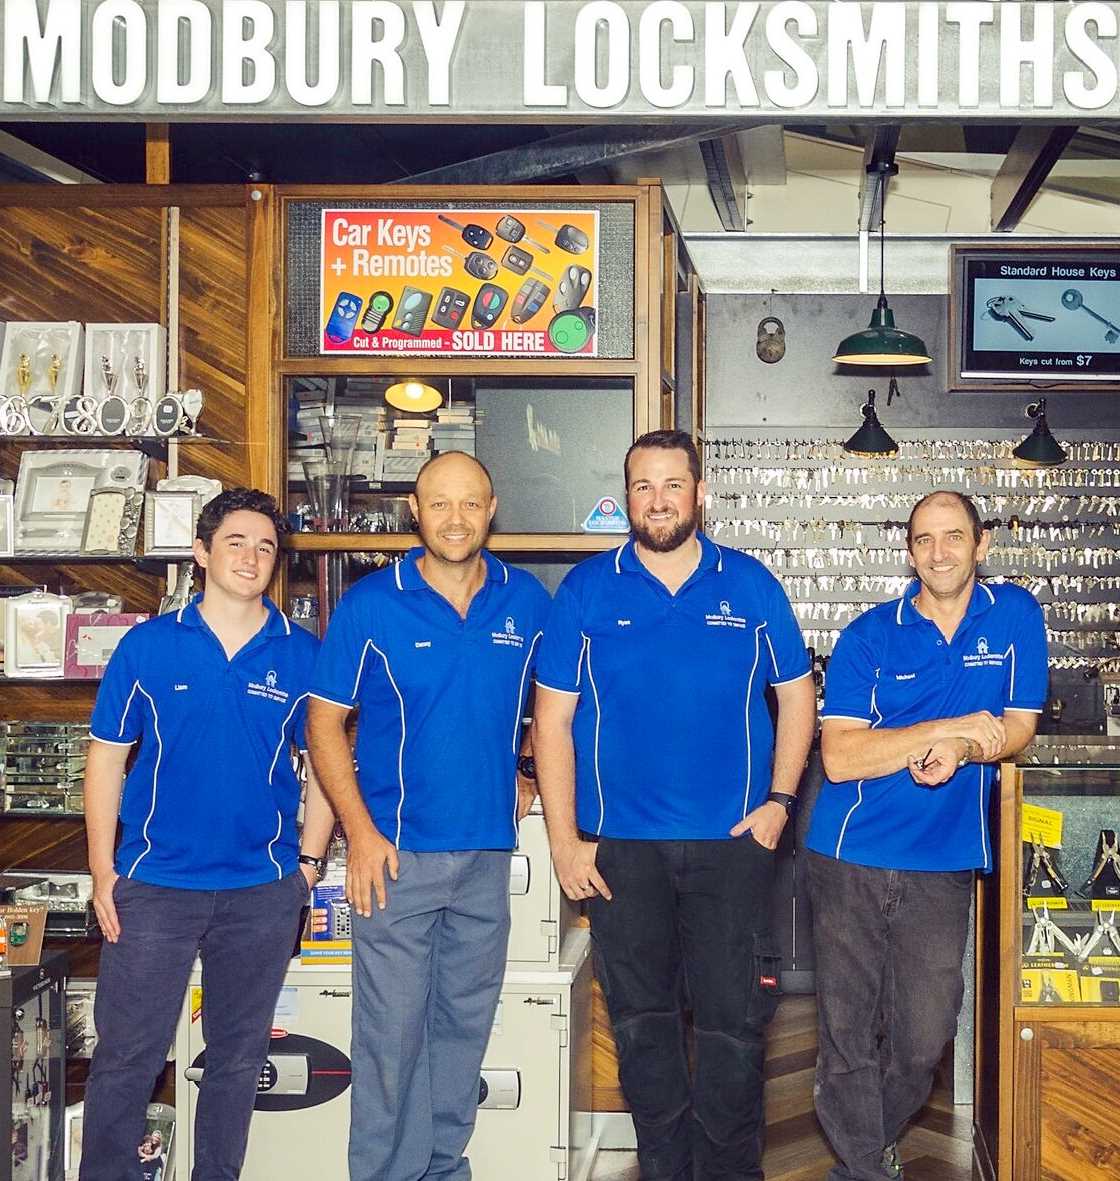 About Modbury Locksmiths - Meet the Team